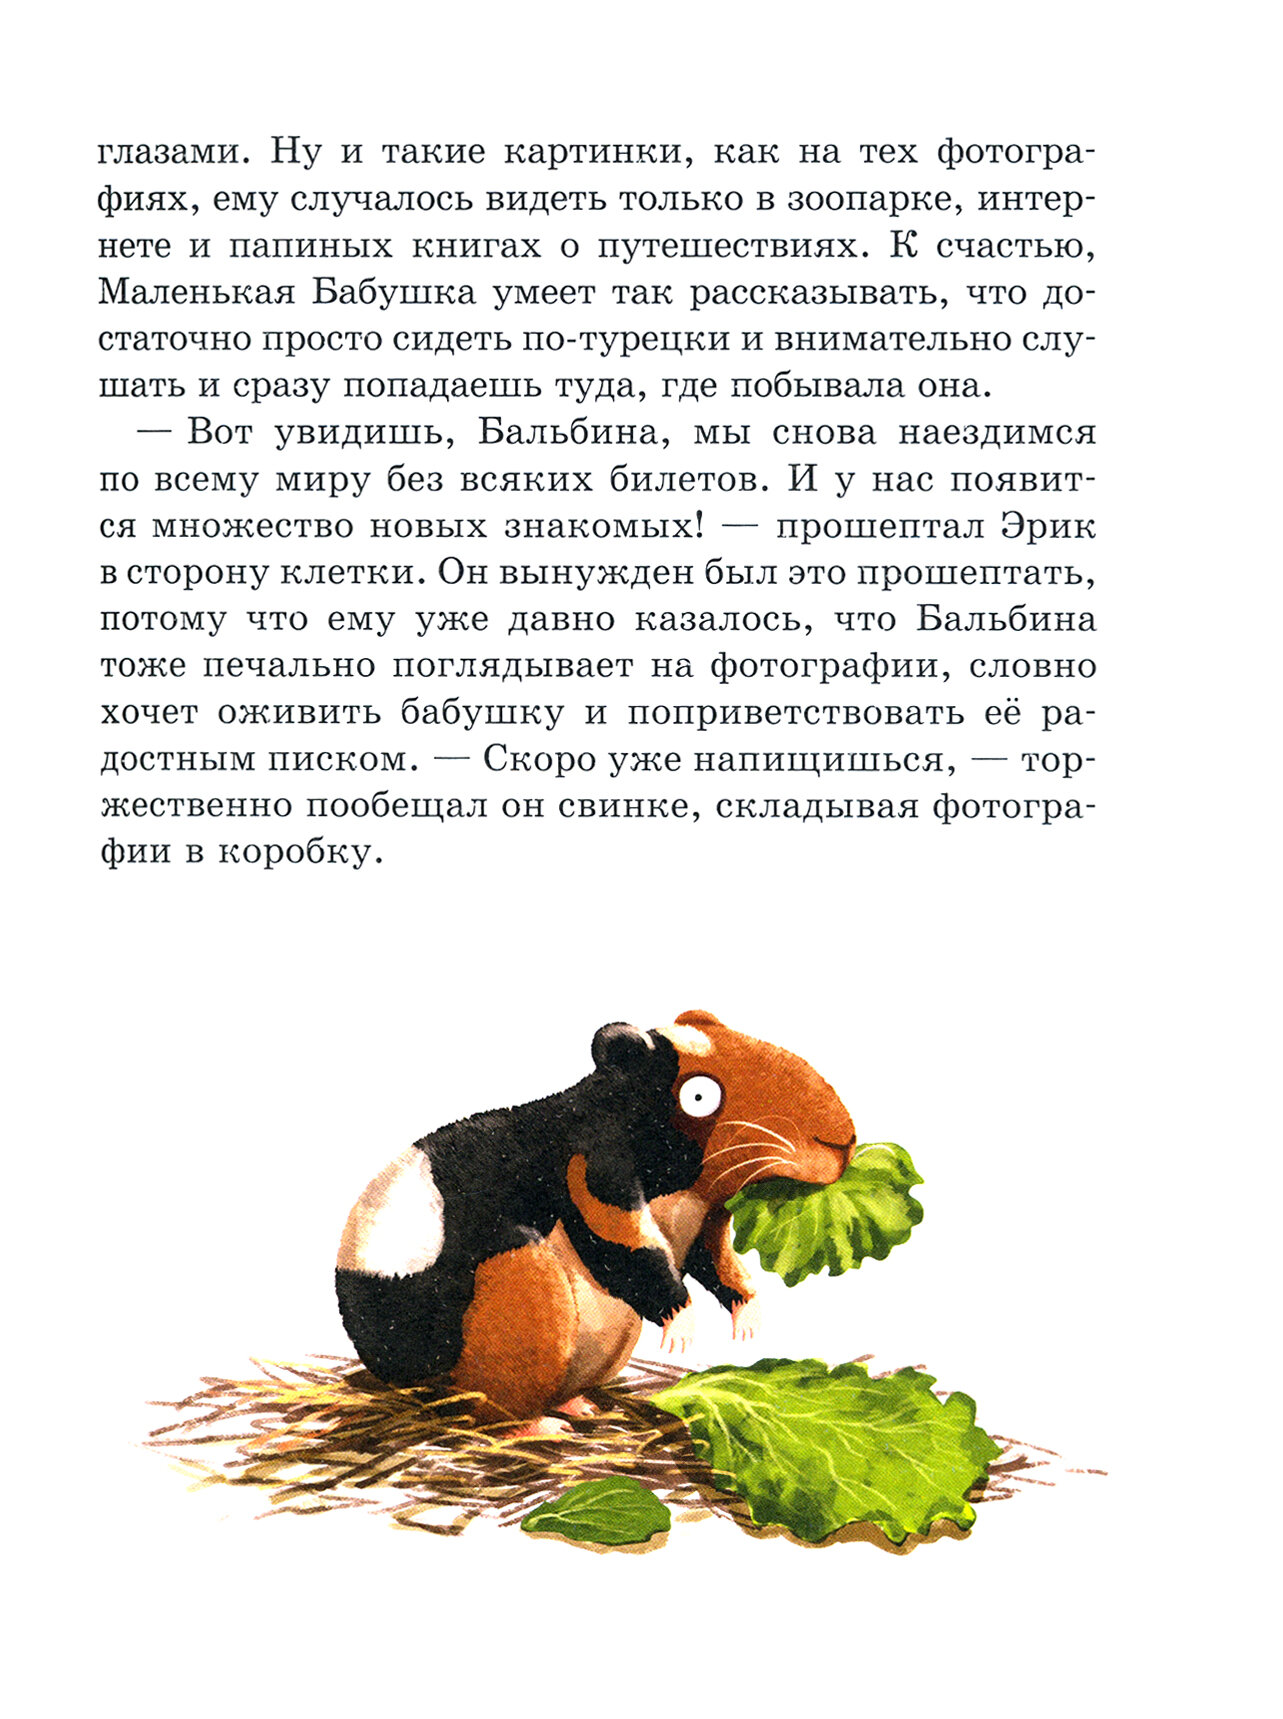 Чудесные травы (Космовская Барбара) - фото №10